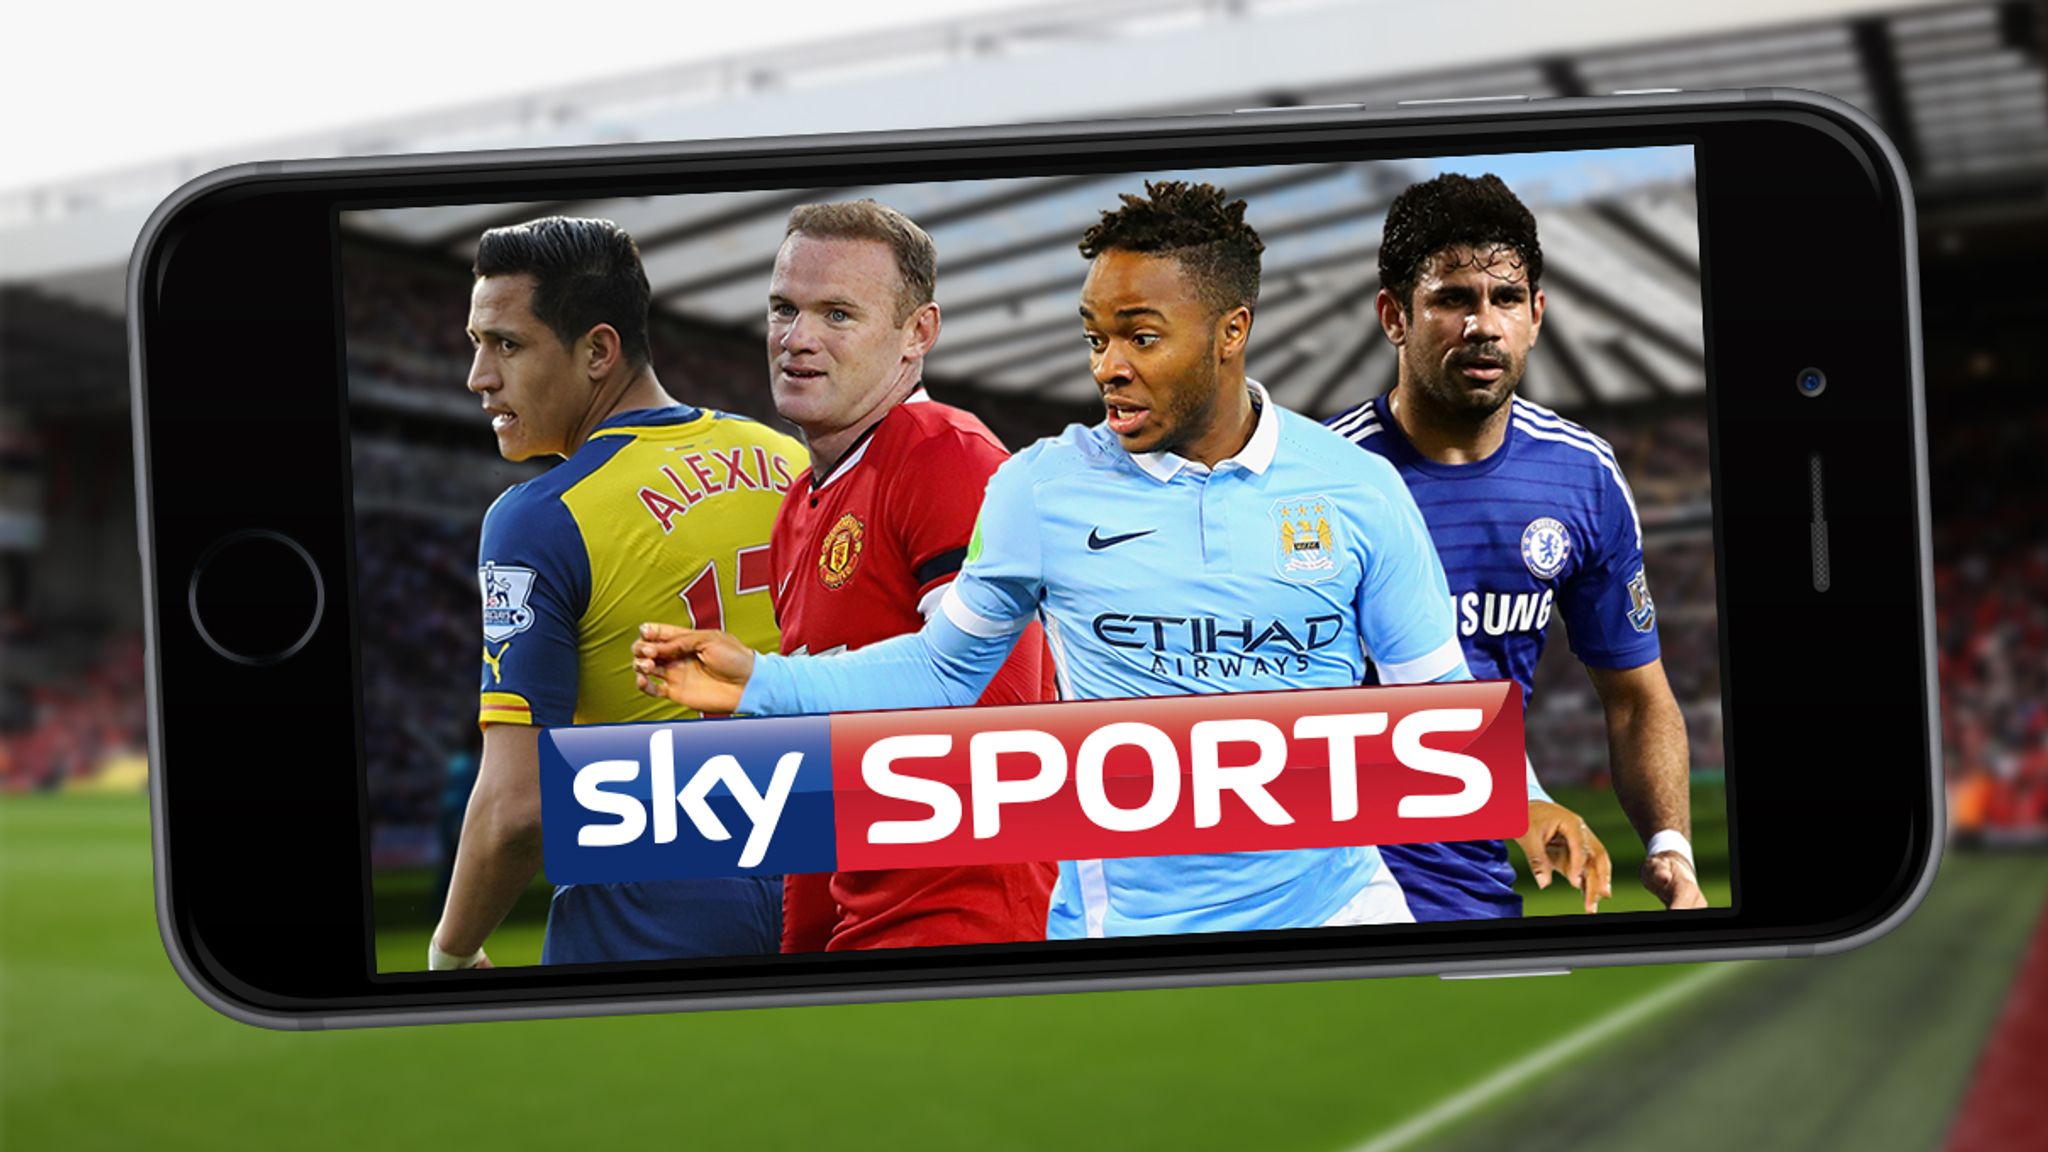 Sky sports live streaming. Sky Sports Premier League. Sky Sports Football. Sky Sports Premier League uk. Sky Sports Football uk.